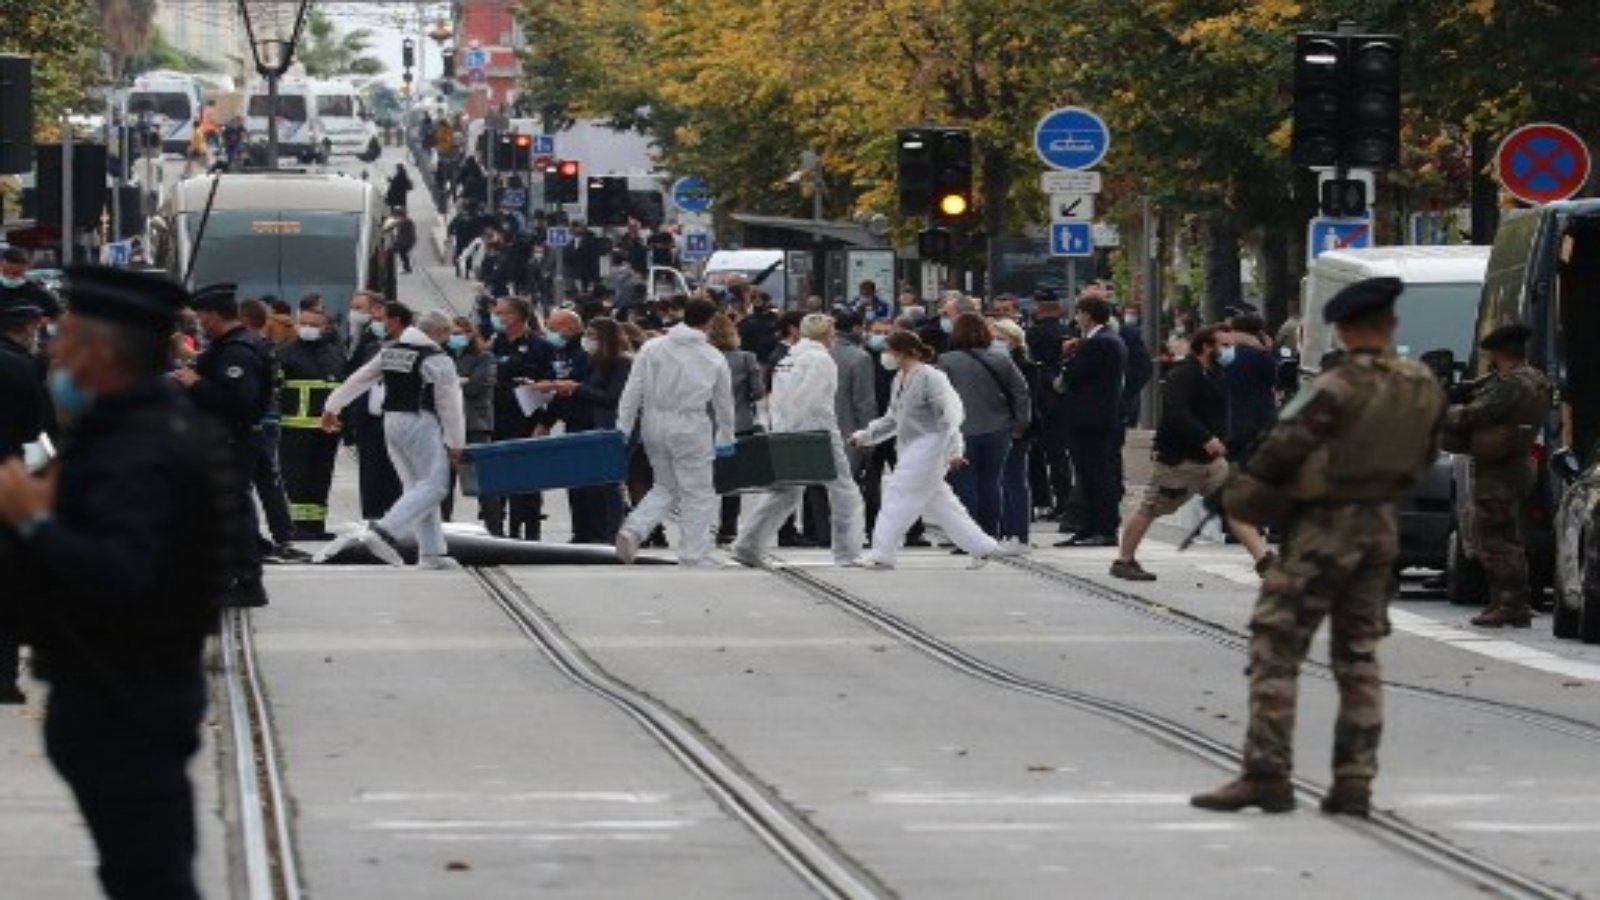 ضباط الطب الشرعي في موقع هجوم بسكين بينما يقف جنود فرنسيون يحرسون الشارع في نيس في 29 أكتوبر 2020